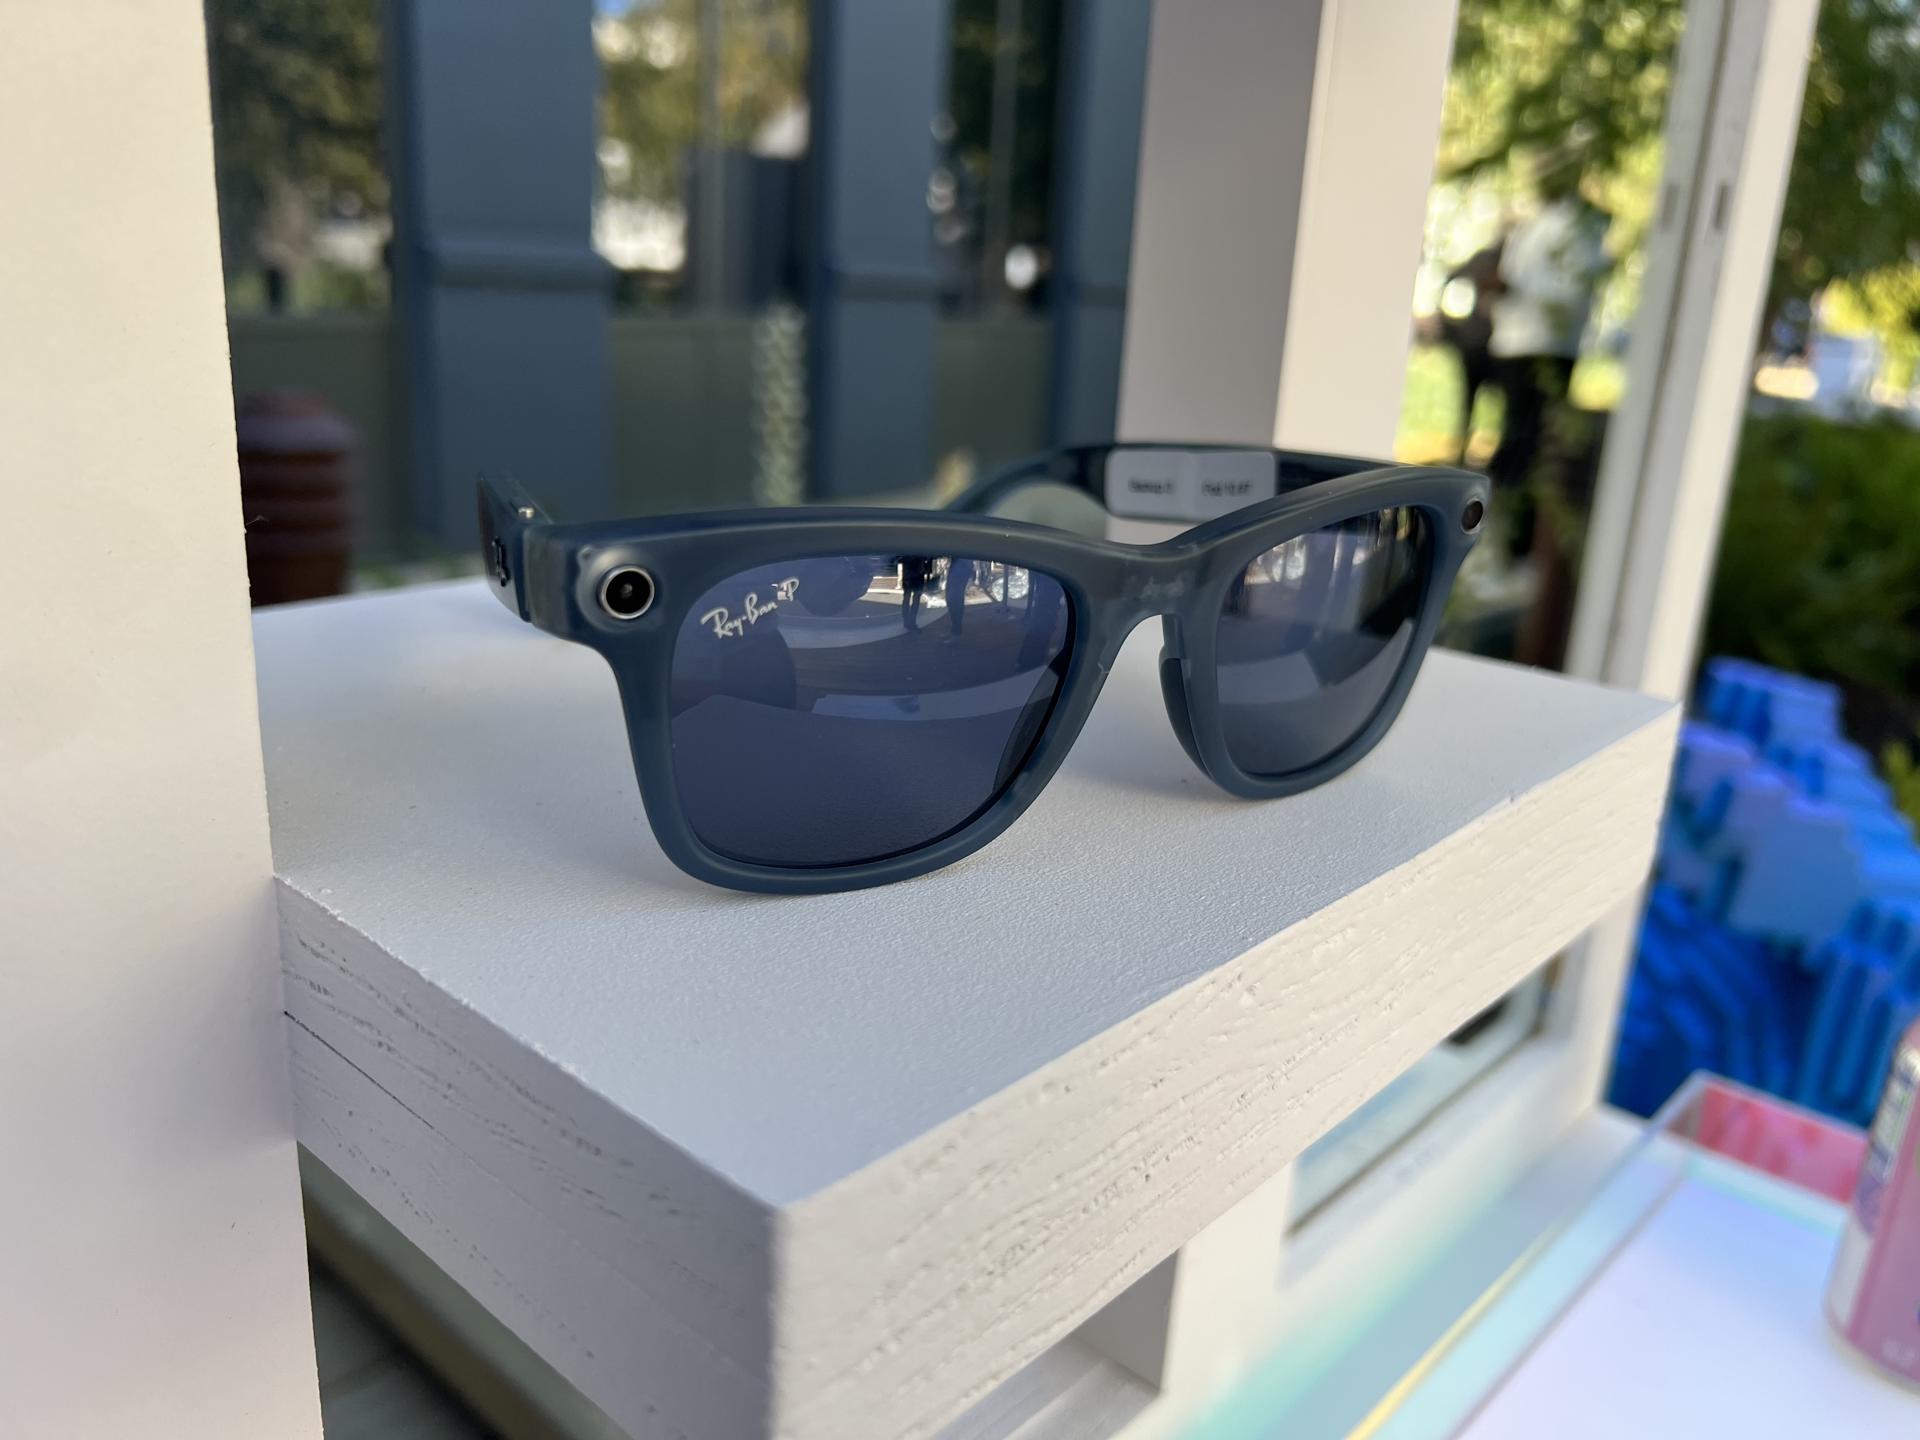 Fotografía de las gafas inteligentes de Meta llamados Ray-Ban Meta Smart Glasses, que saldrán a la venta el 17 de octubre en Estados Unidos con un precio inicial de 299 dólares, presentados durante el evento anual Meta Connect en Menlo Park, California (EE. UU).EFE/Sarah Yáñez-Richards
